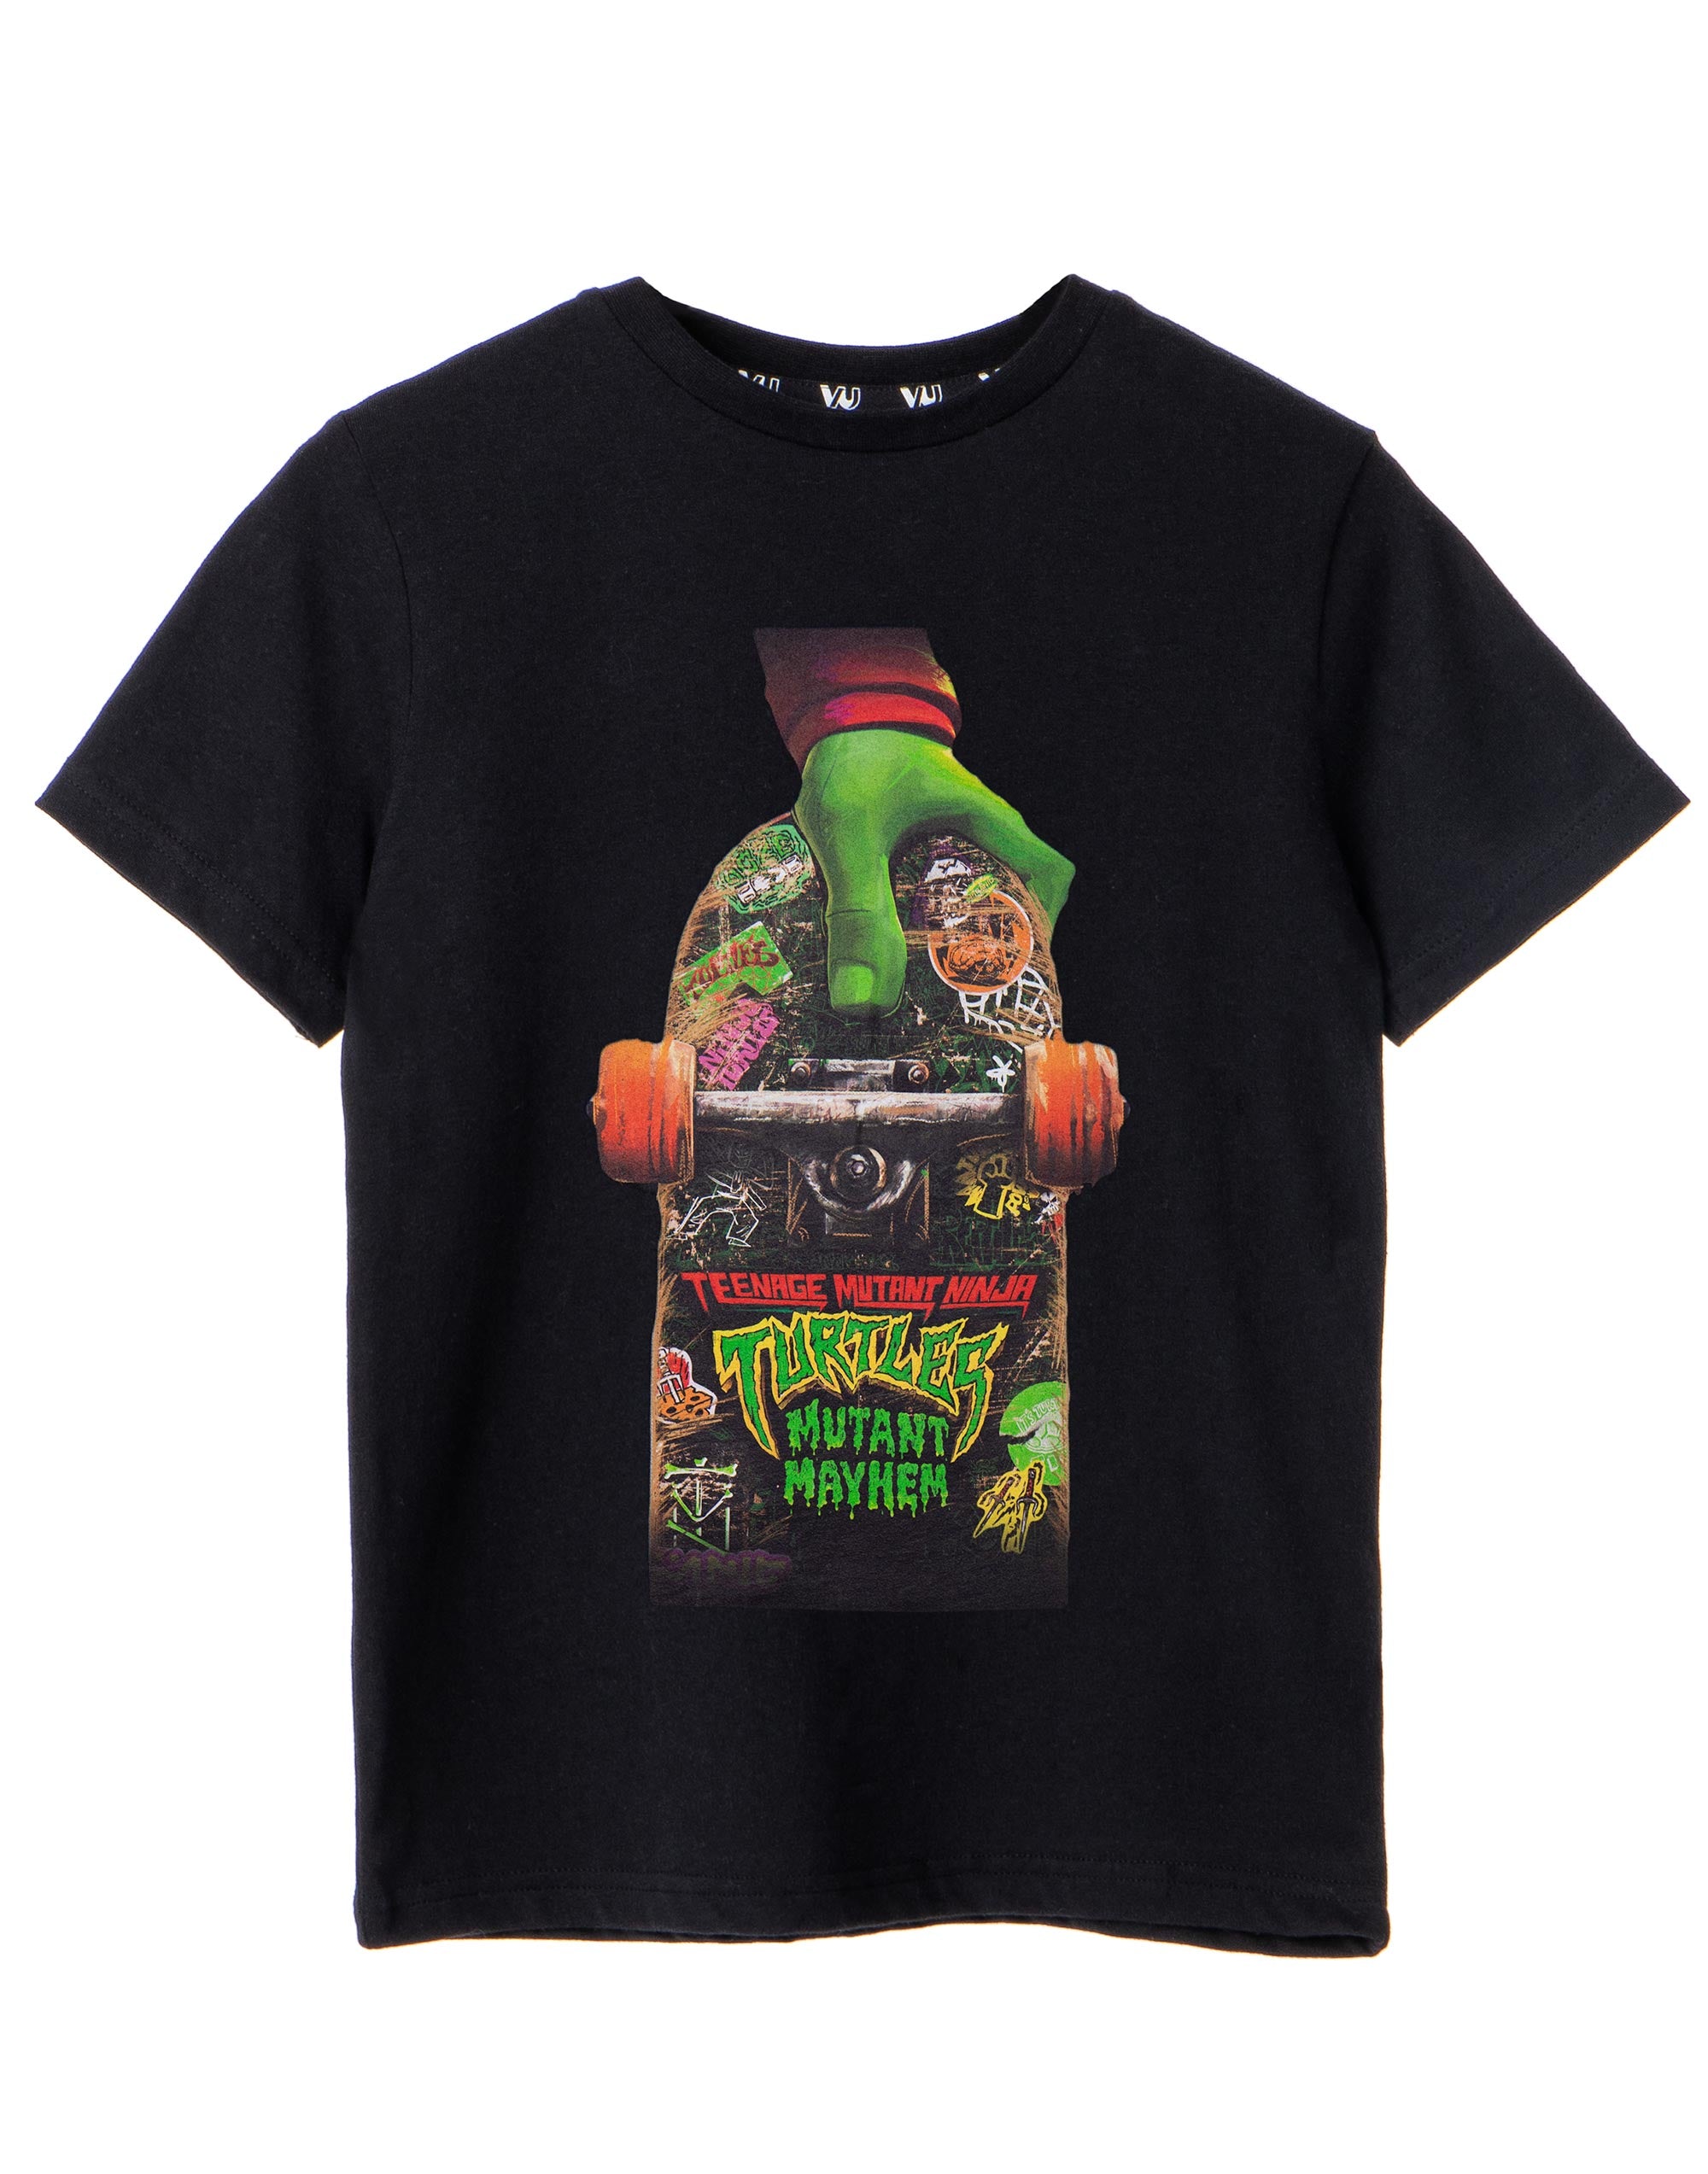 TMNT Mutant Mayhem Skateboard Design Boys T-Shirt